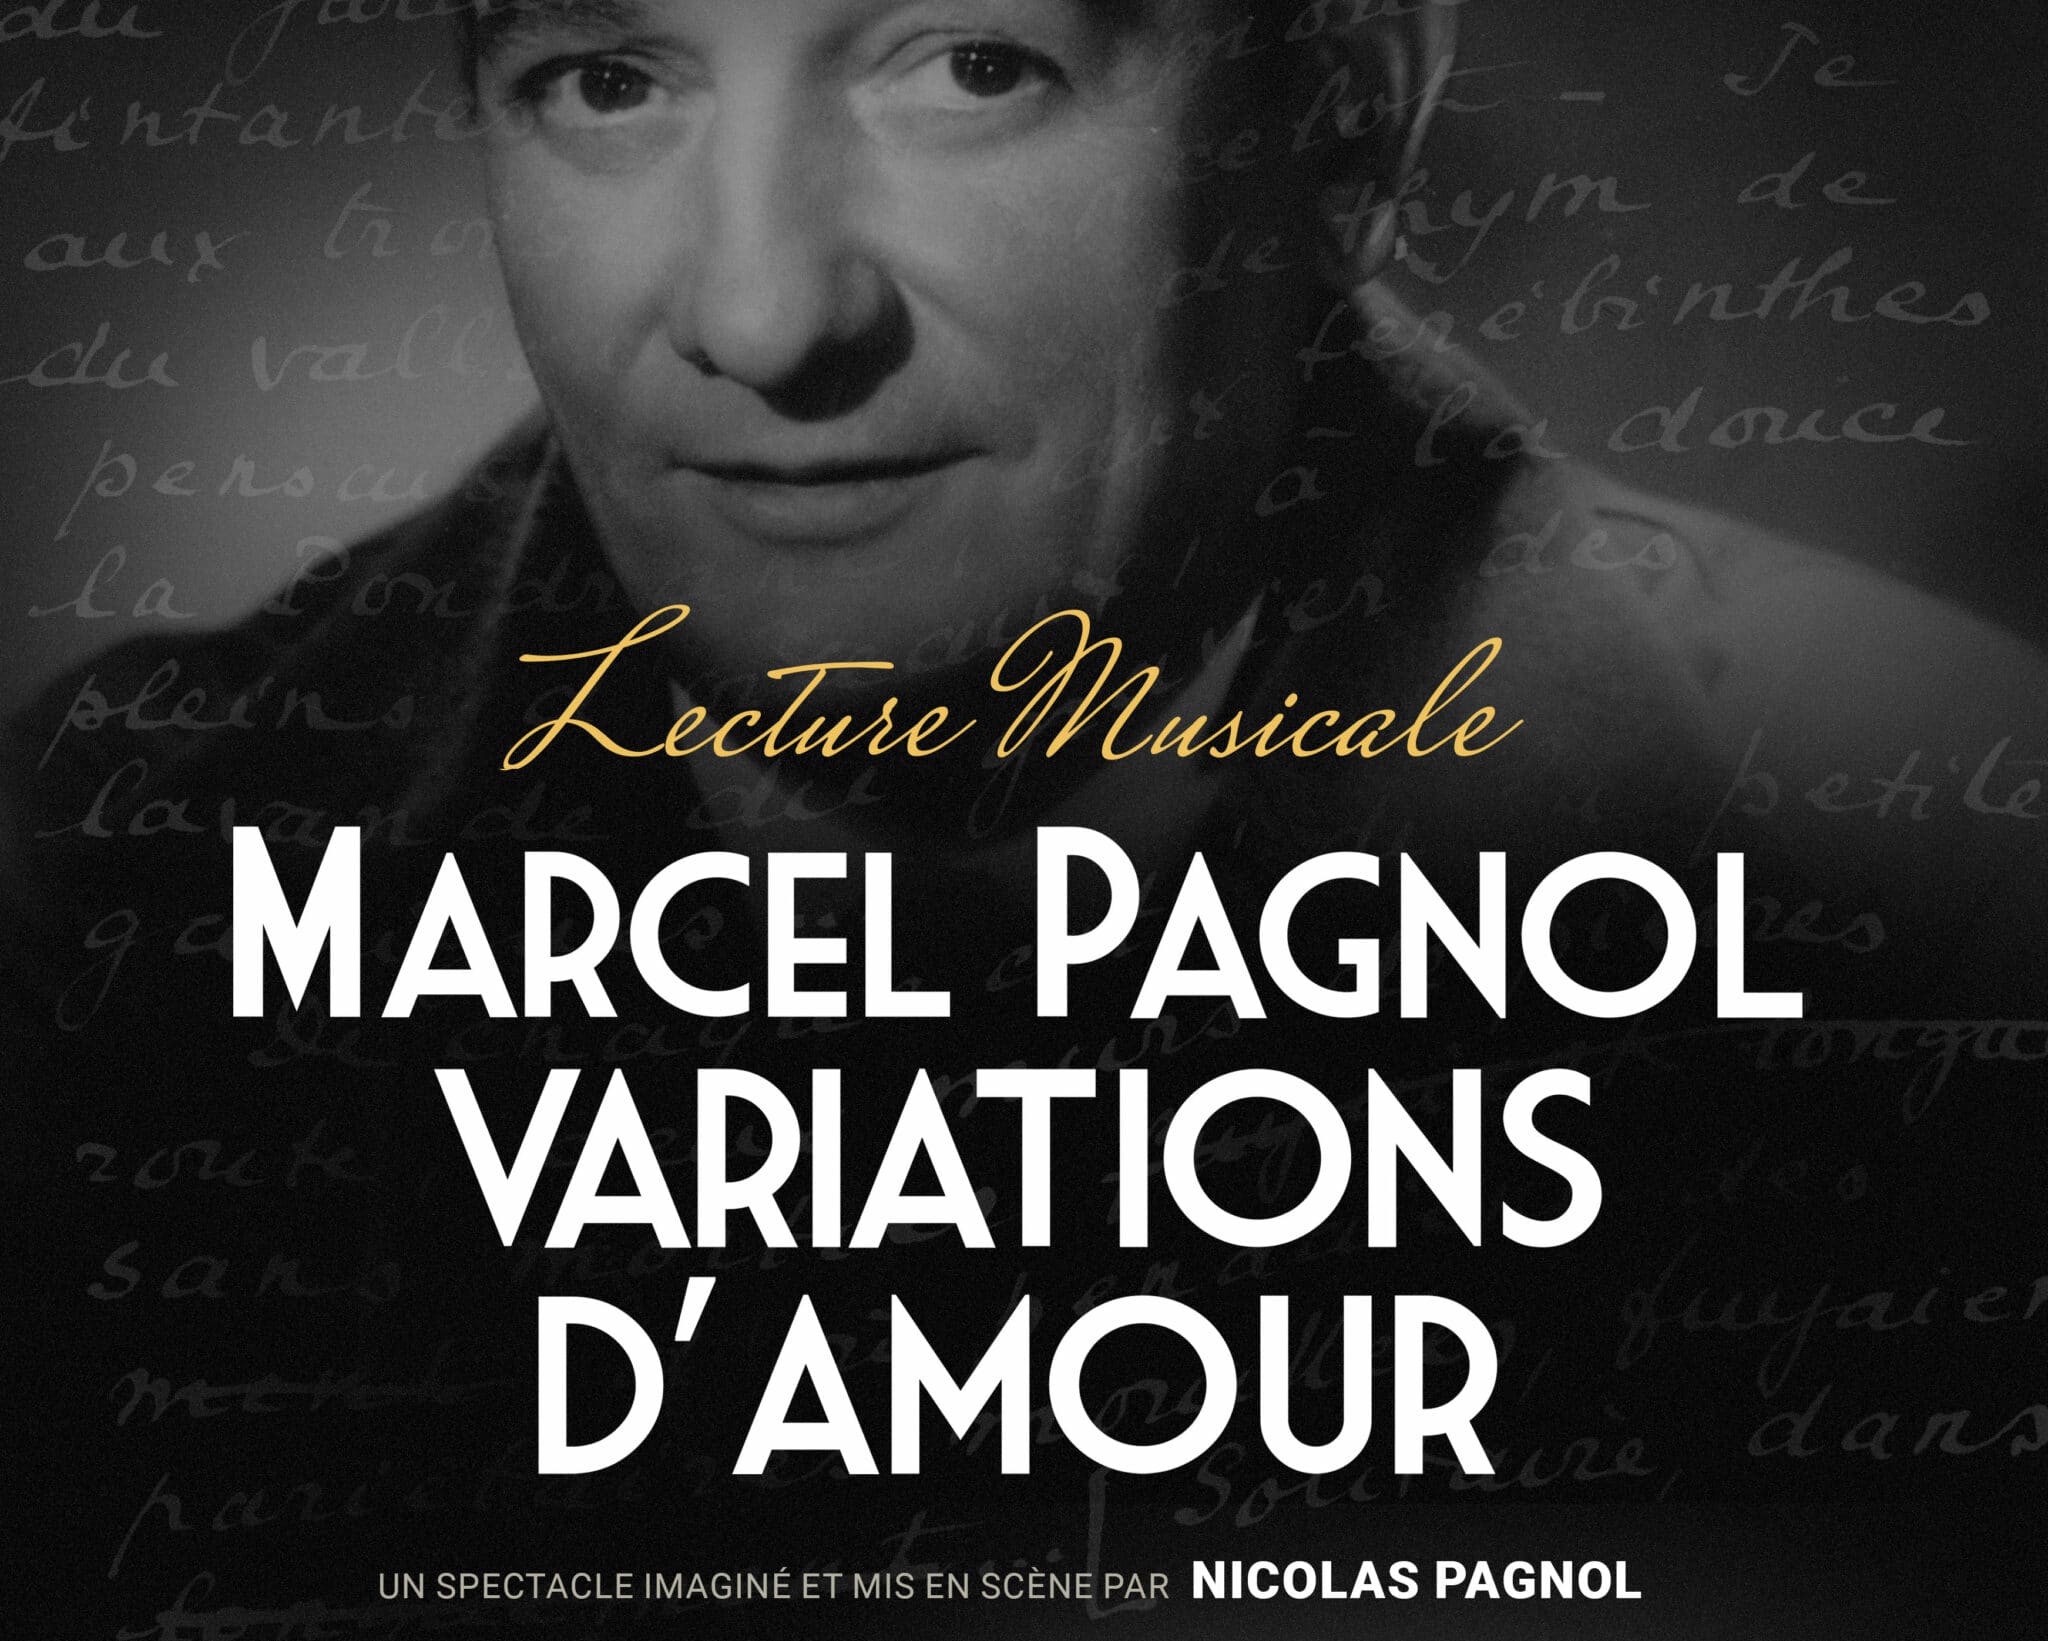 "Marcel Pagnol, variations d’amour", lecture musicale imaginée et mise en scène par Nicolas Pagnol, interprétée par Vincent Fernandel & Franck Ciup. Affiche réalisée par Matk.